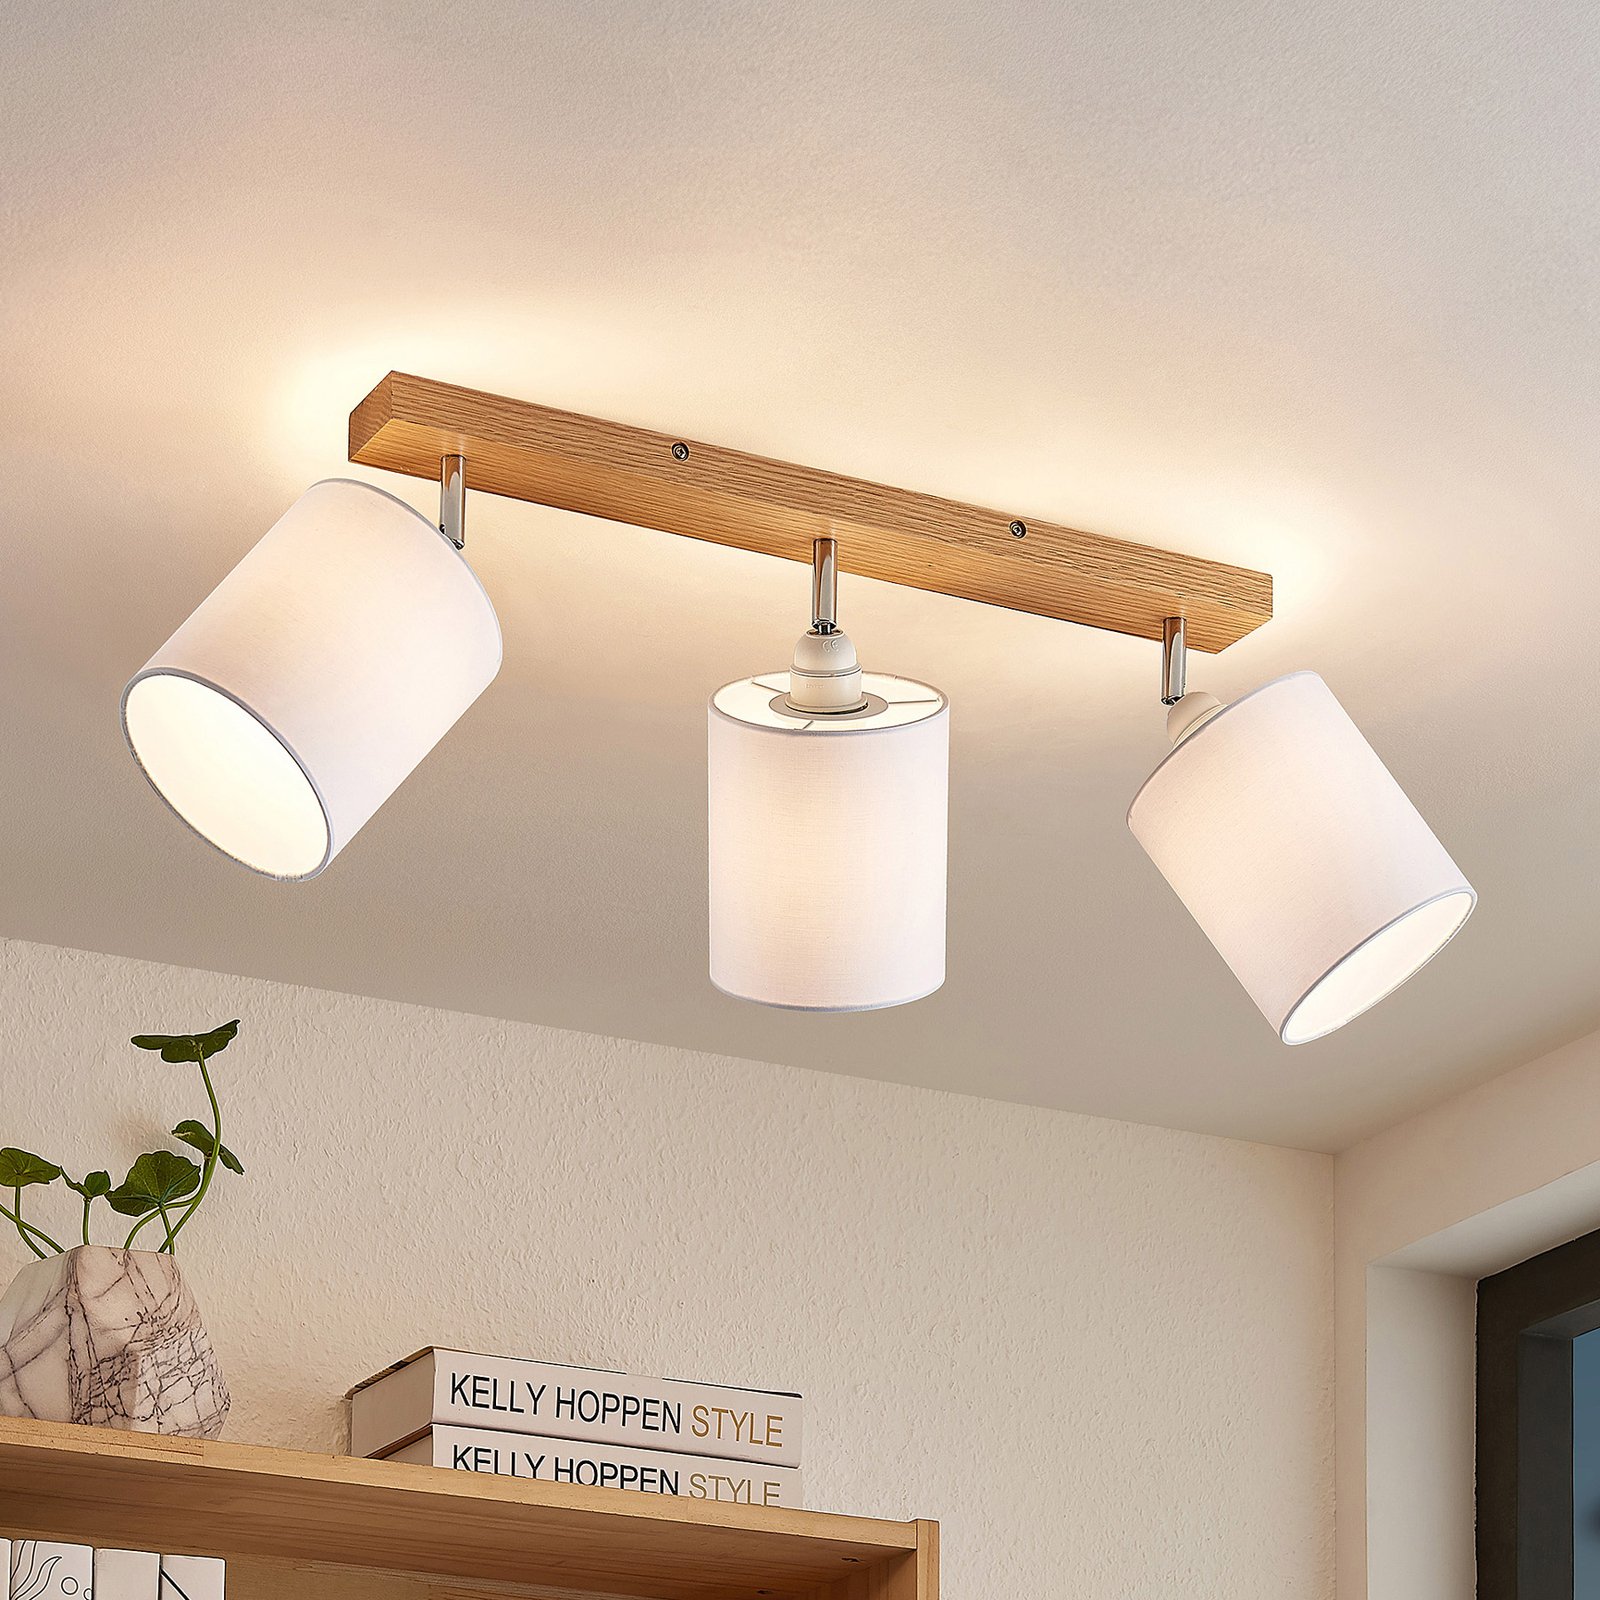 Lindby Imarin ceiling spotlight, 3-bulb, white